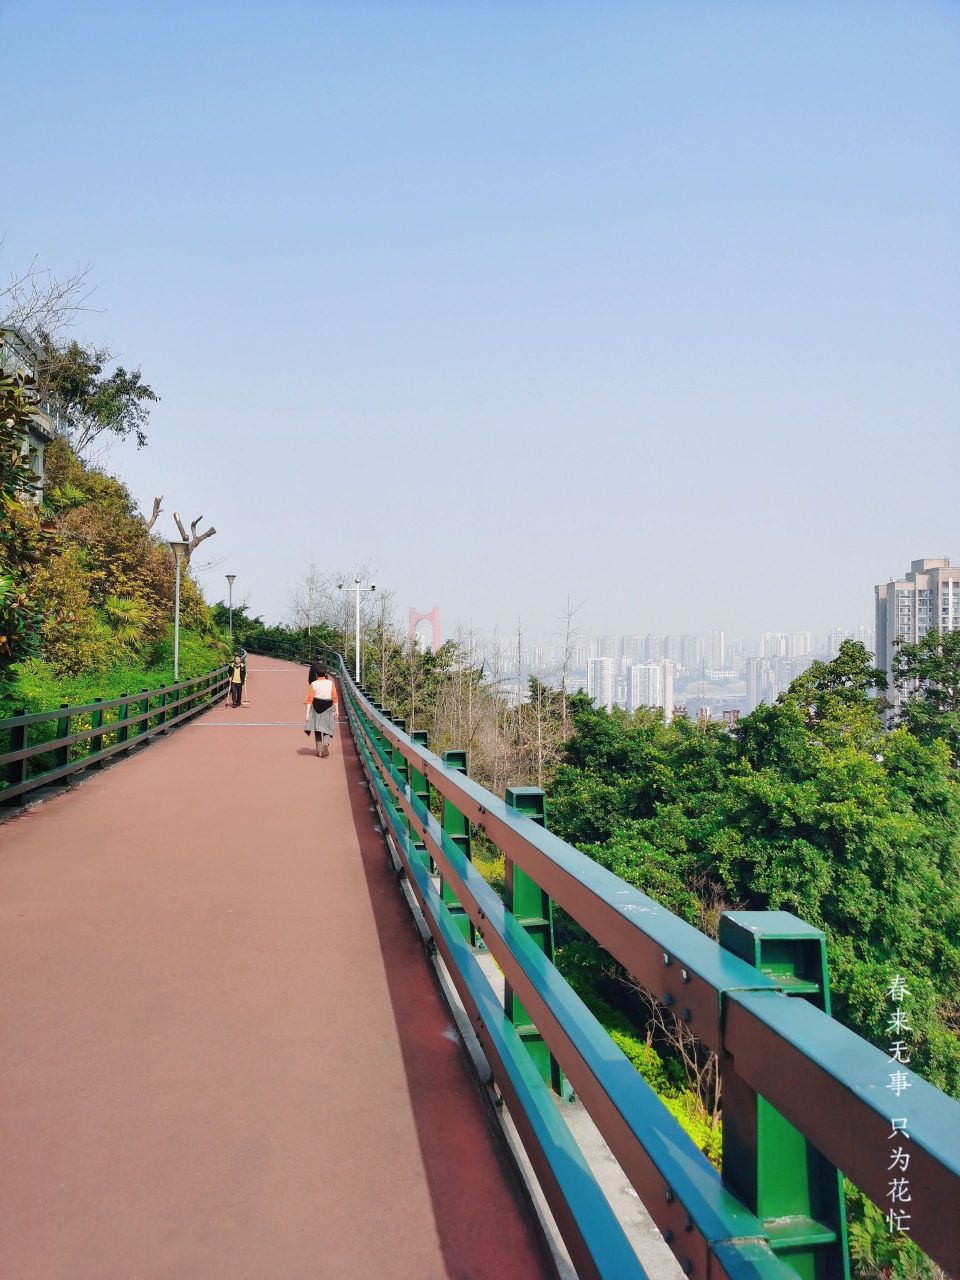 重庆半山崖线75山城浪漫的遛娃景观步道75 96又发现了一个重庆